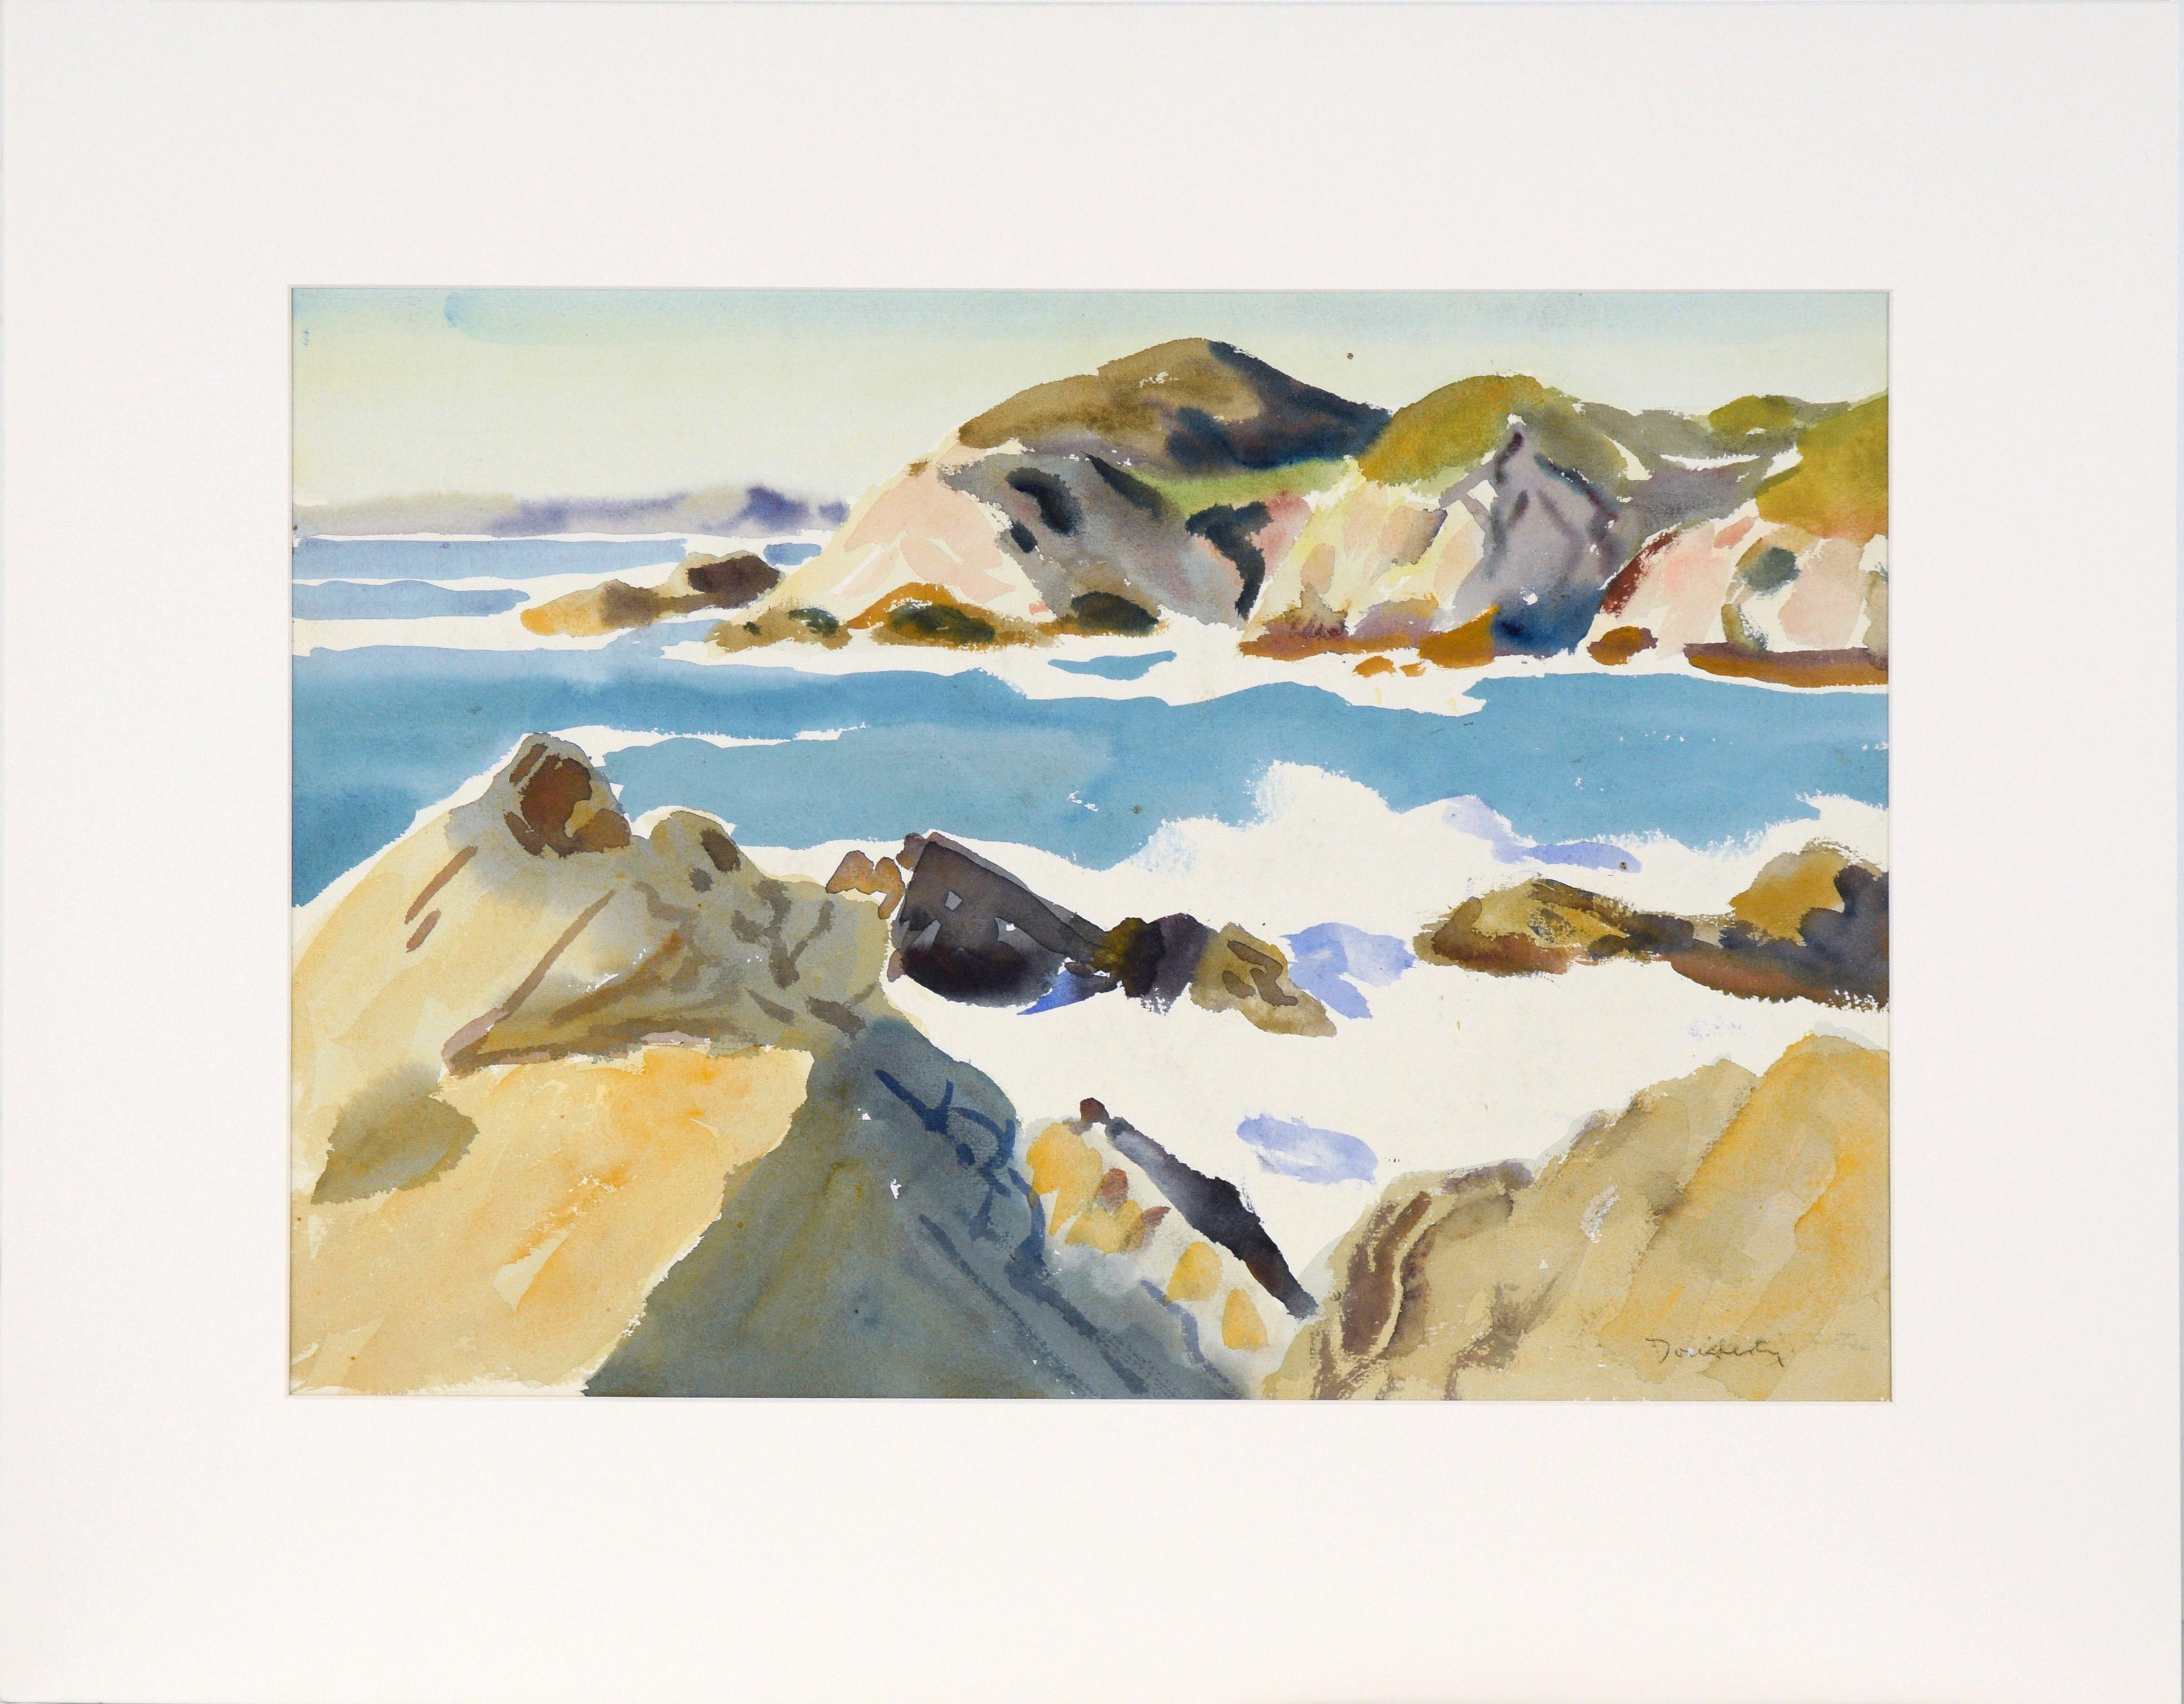 Paul Dougherty Landscape Art - Big Sur Coast Landscape in Watercolor on Paper